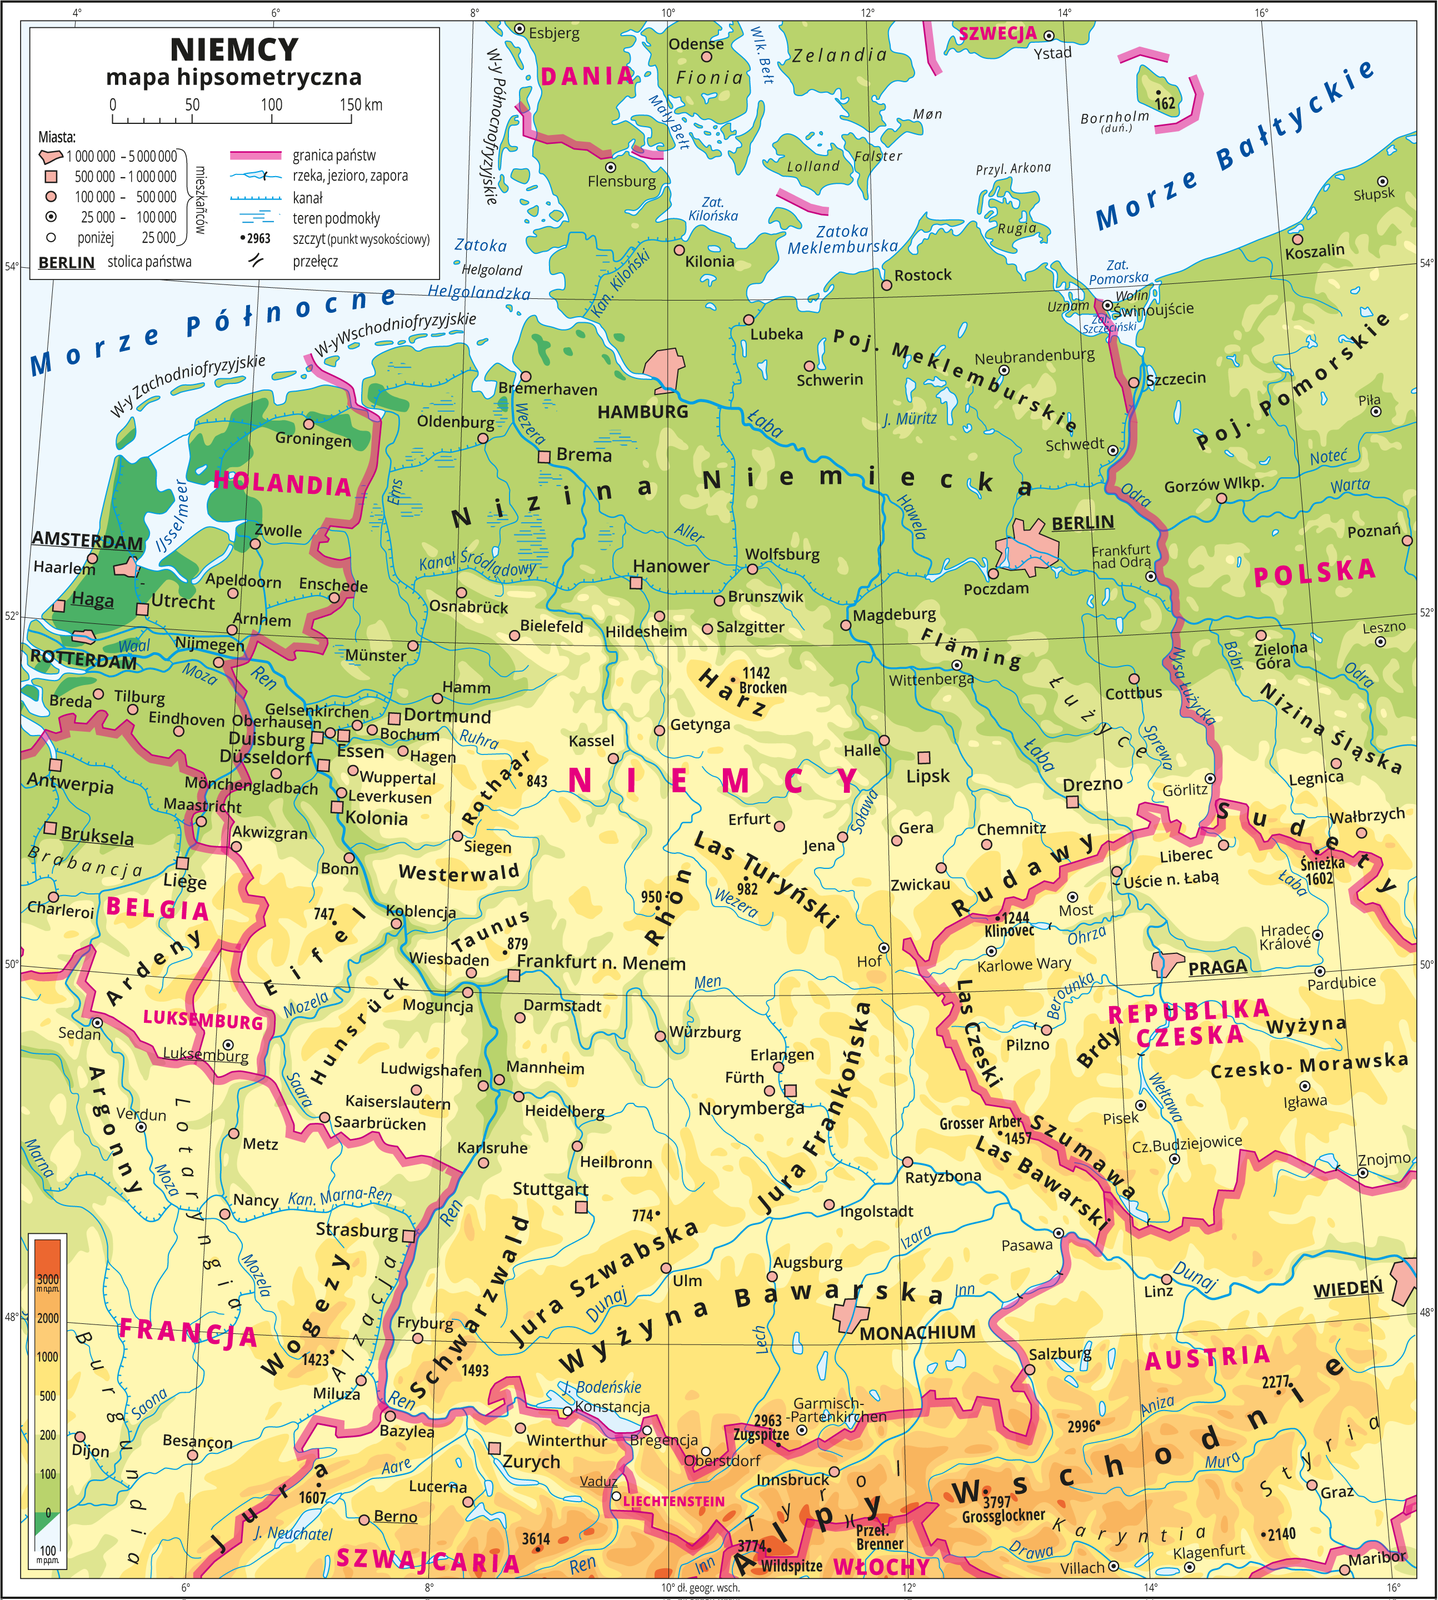 Ilustracja przedstawia mapę hipsometryczną Niemiec. W obrębie lądów występują obszary w kolorze zielonym, żółtym i pomarańczowym. Na północy przeważają obszary w kolorze zielonym przechodzące ku południowi w kolor żółty i pomarańczowy. Morza zaznaczono kolorem niebieskim. Na mapie opisano nazwy wysp, głównych nizin, wyżyn i pasm górskich, morza, zatok, rzek i jezior. Oznaczono i opisano główne miasta. Oznaczono czarnymi kropkami i opisano szczyty górskie. Różową wstążką oznaczono granice państw. Kolorem czerwonym opisano państwa sąsiadujące z Niemcami. Mapa pokryta jest równoleżnikami i południkami. Dookoła mapy w białej ramce opisano współrzędne geograficzne co dwa stopnie. W legendzie umieszczono i opisano znaki użyte na mapie.